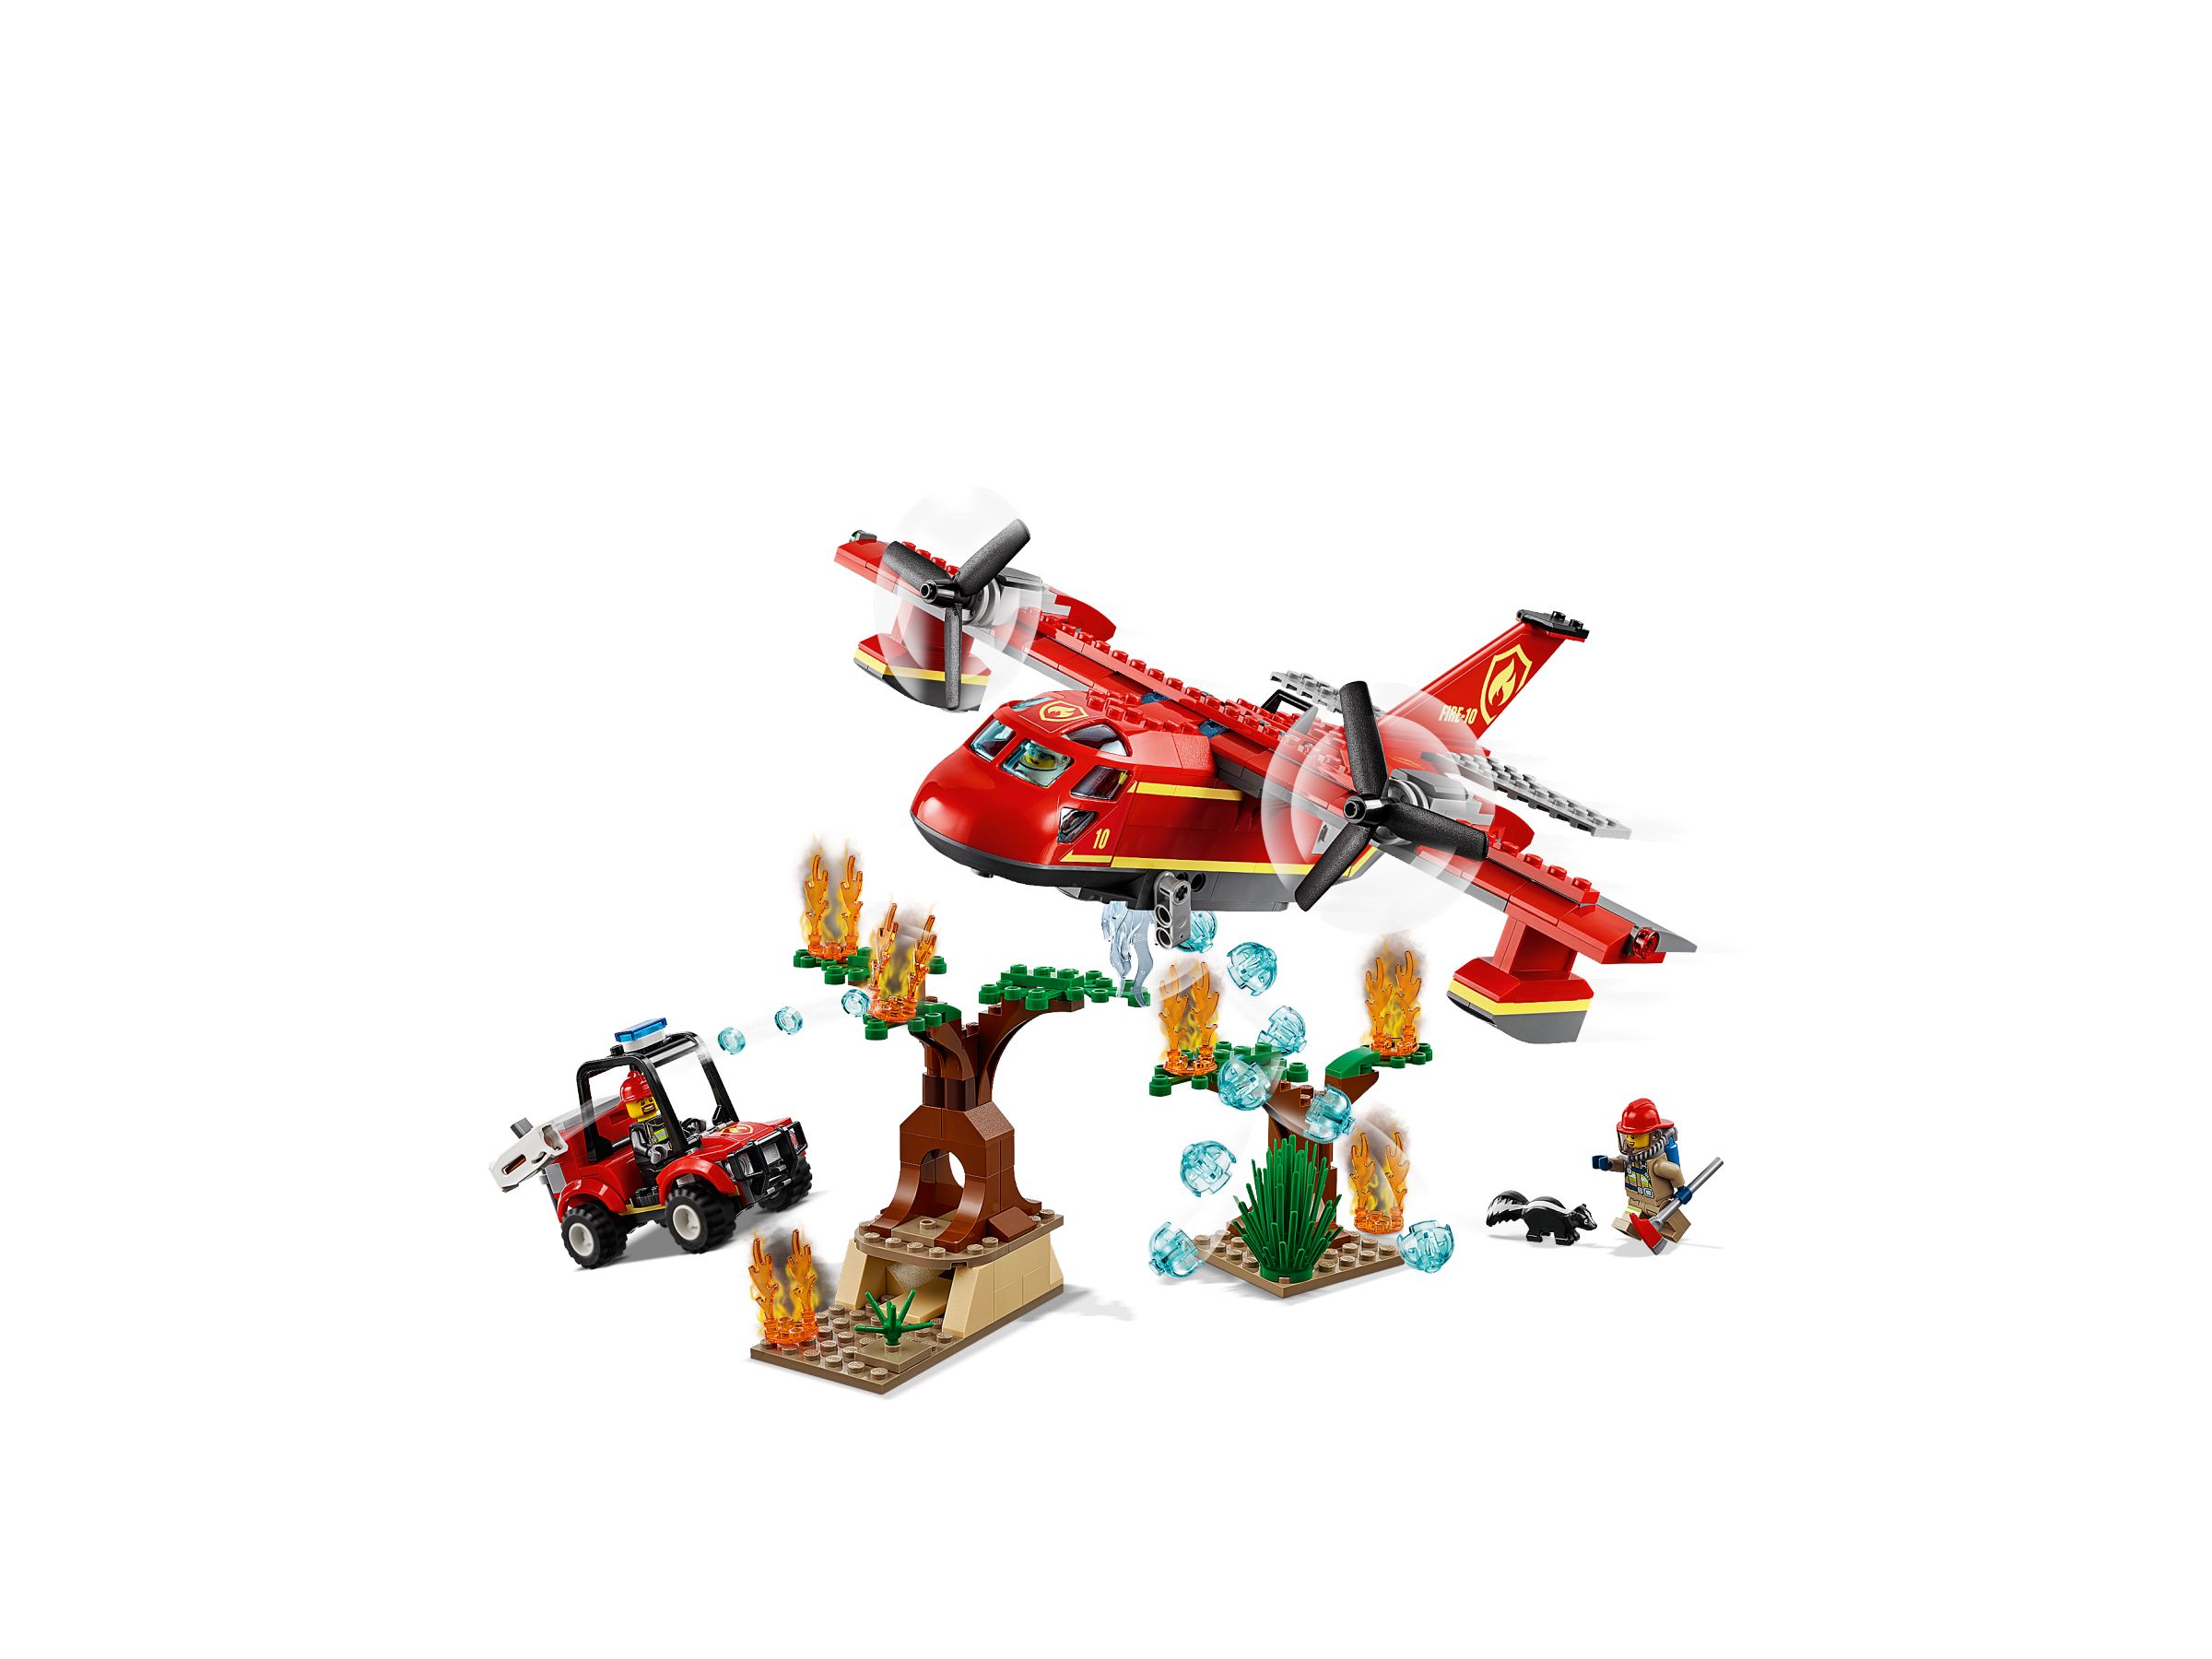 LEGO City 60217 Löschflugzeug der Feuerwehr LEGO_60217_alt2.jpg